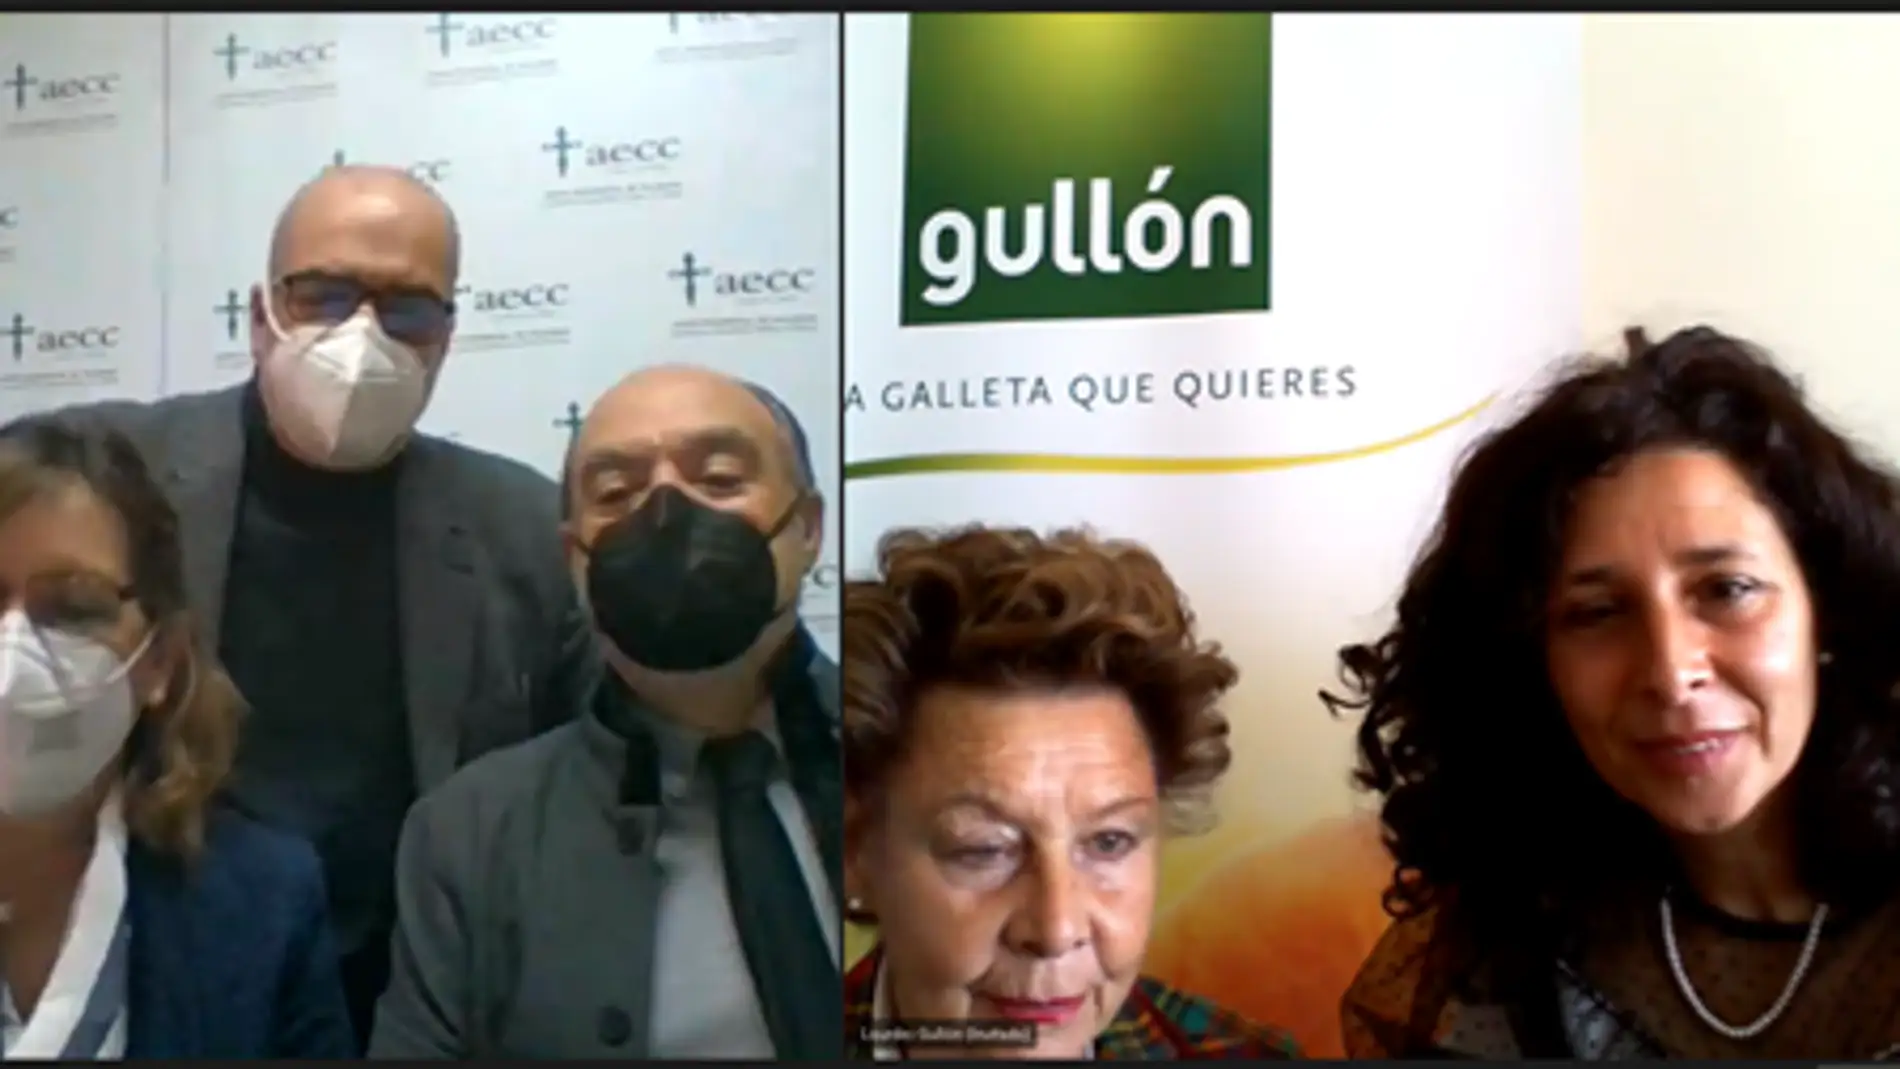 Galletas Gullón establece una alianza con la AECC para luchar contra el cáncer